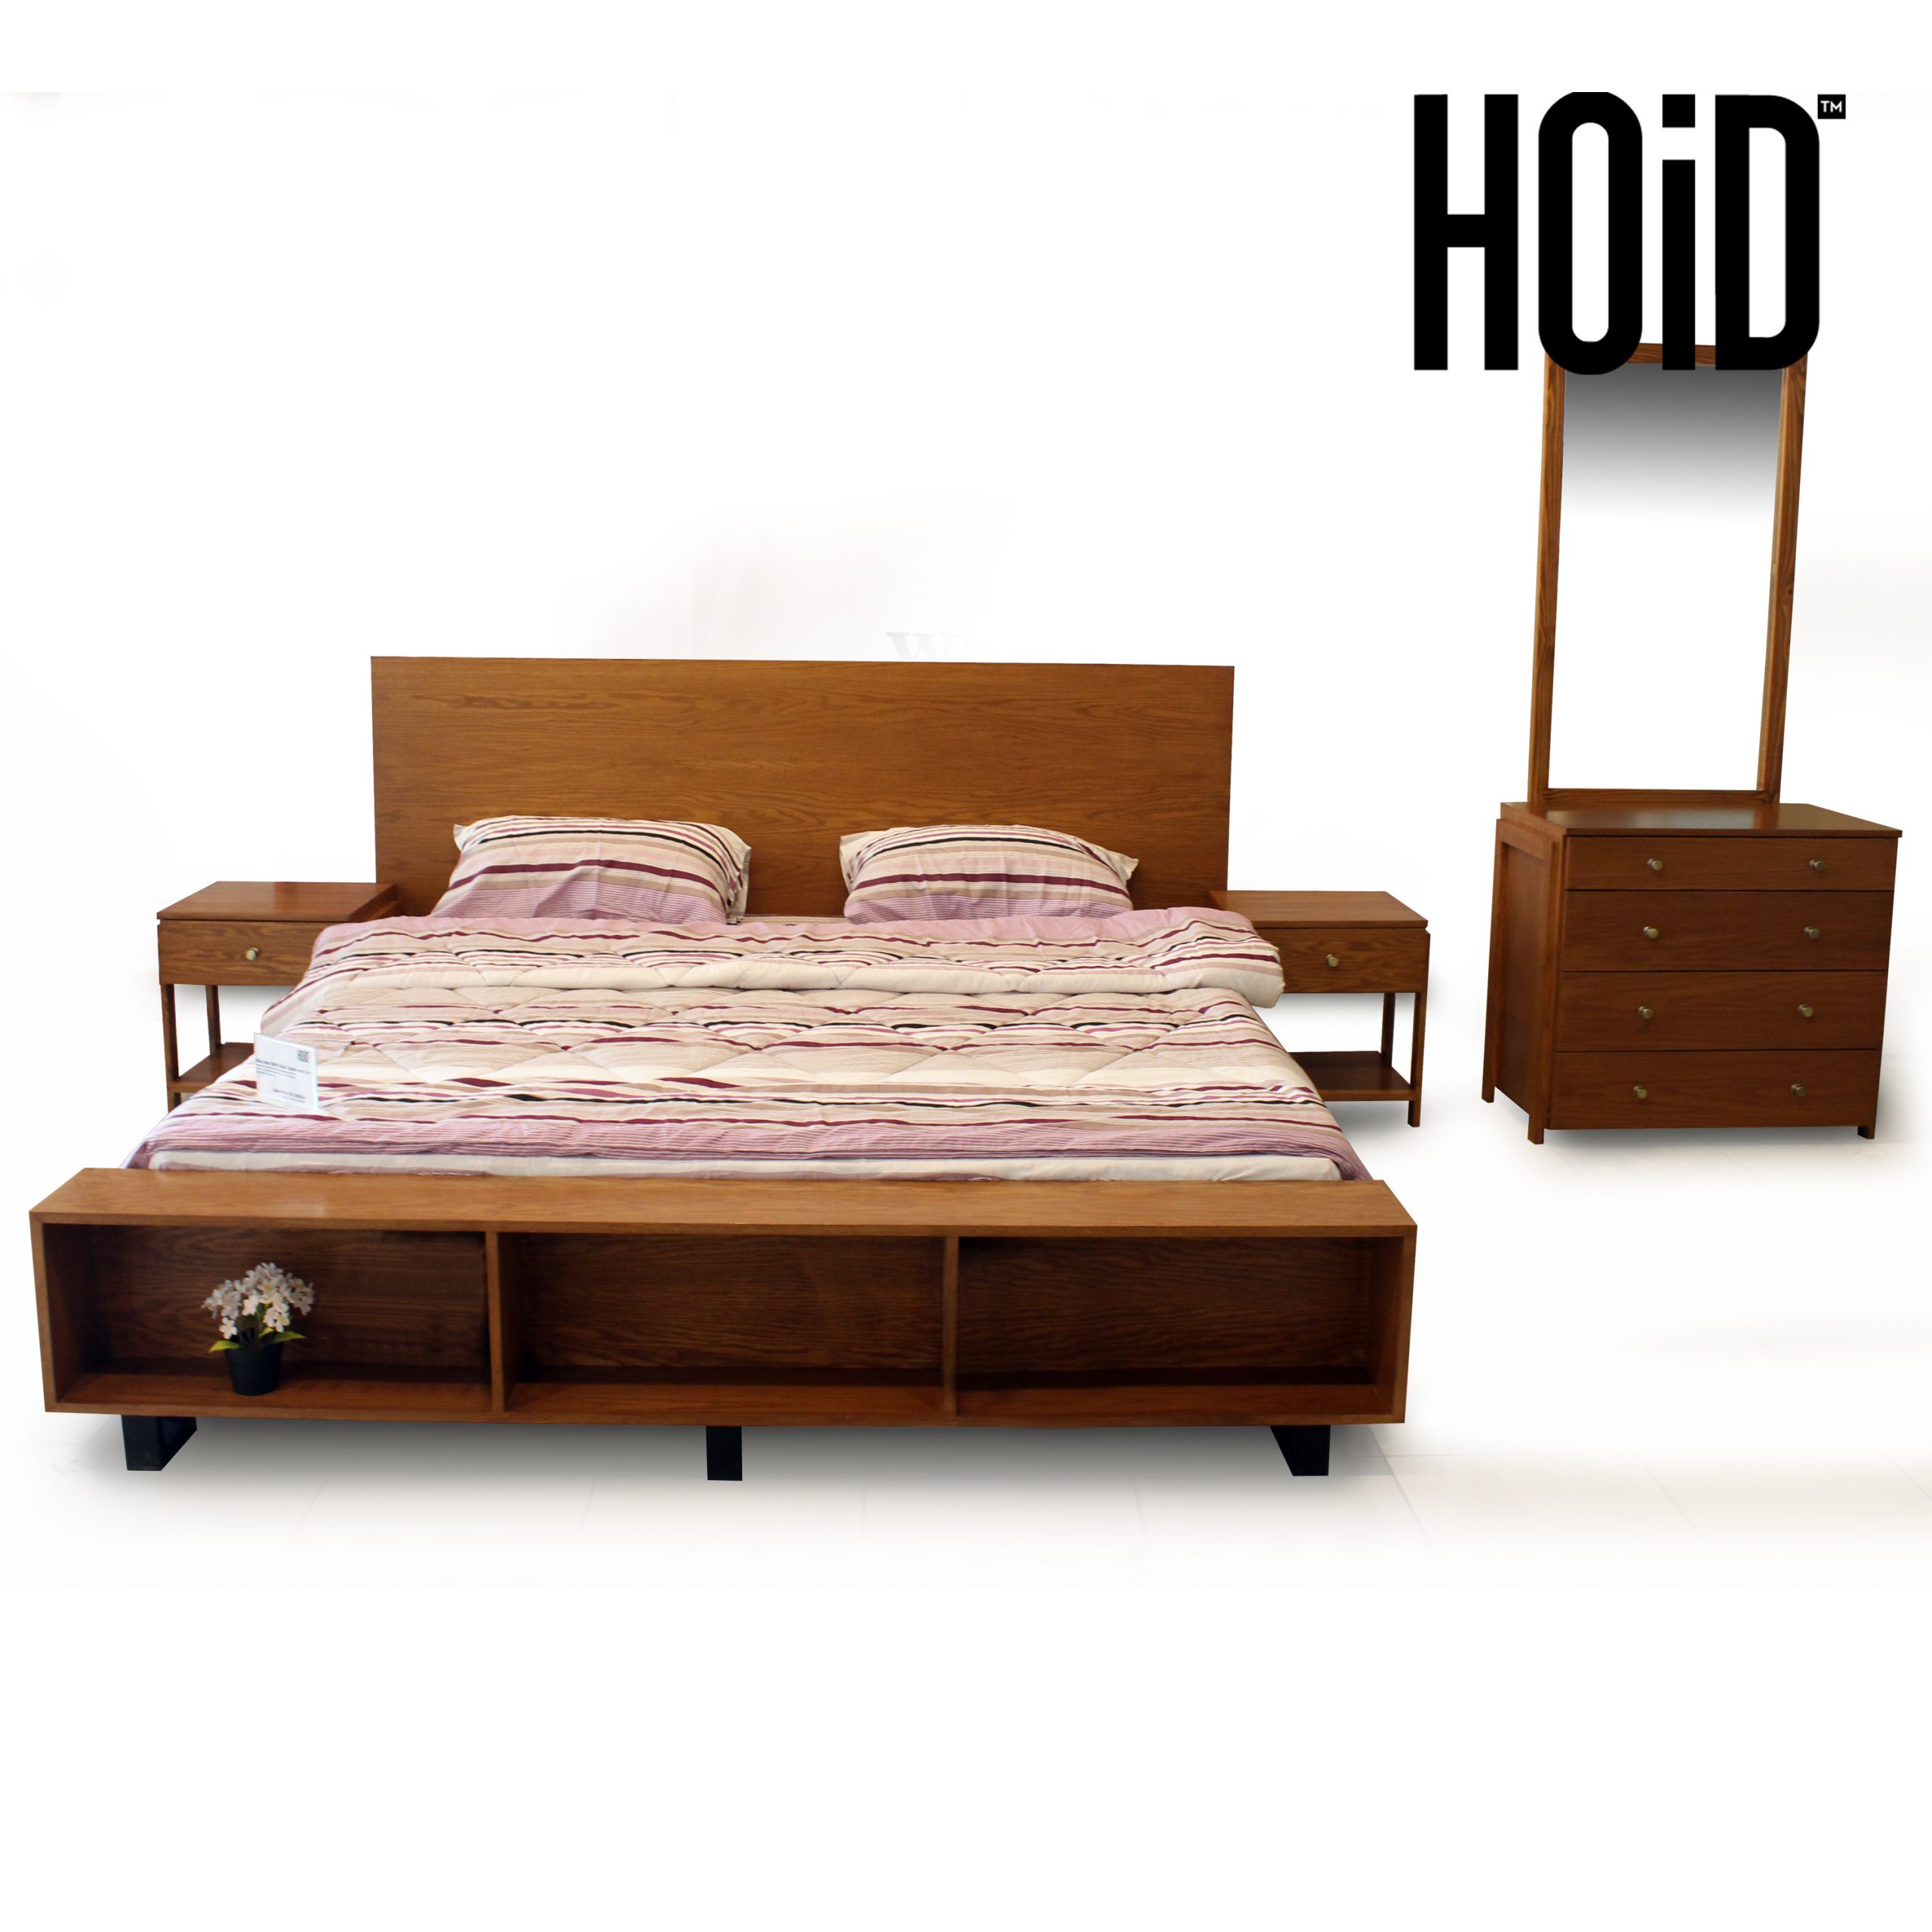 miqa-bed-sides-dresser-scaled-2.jpg